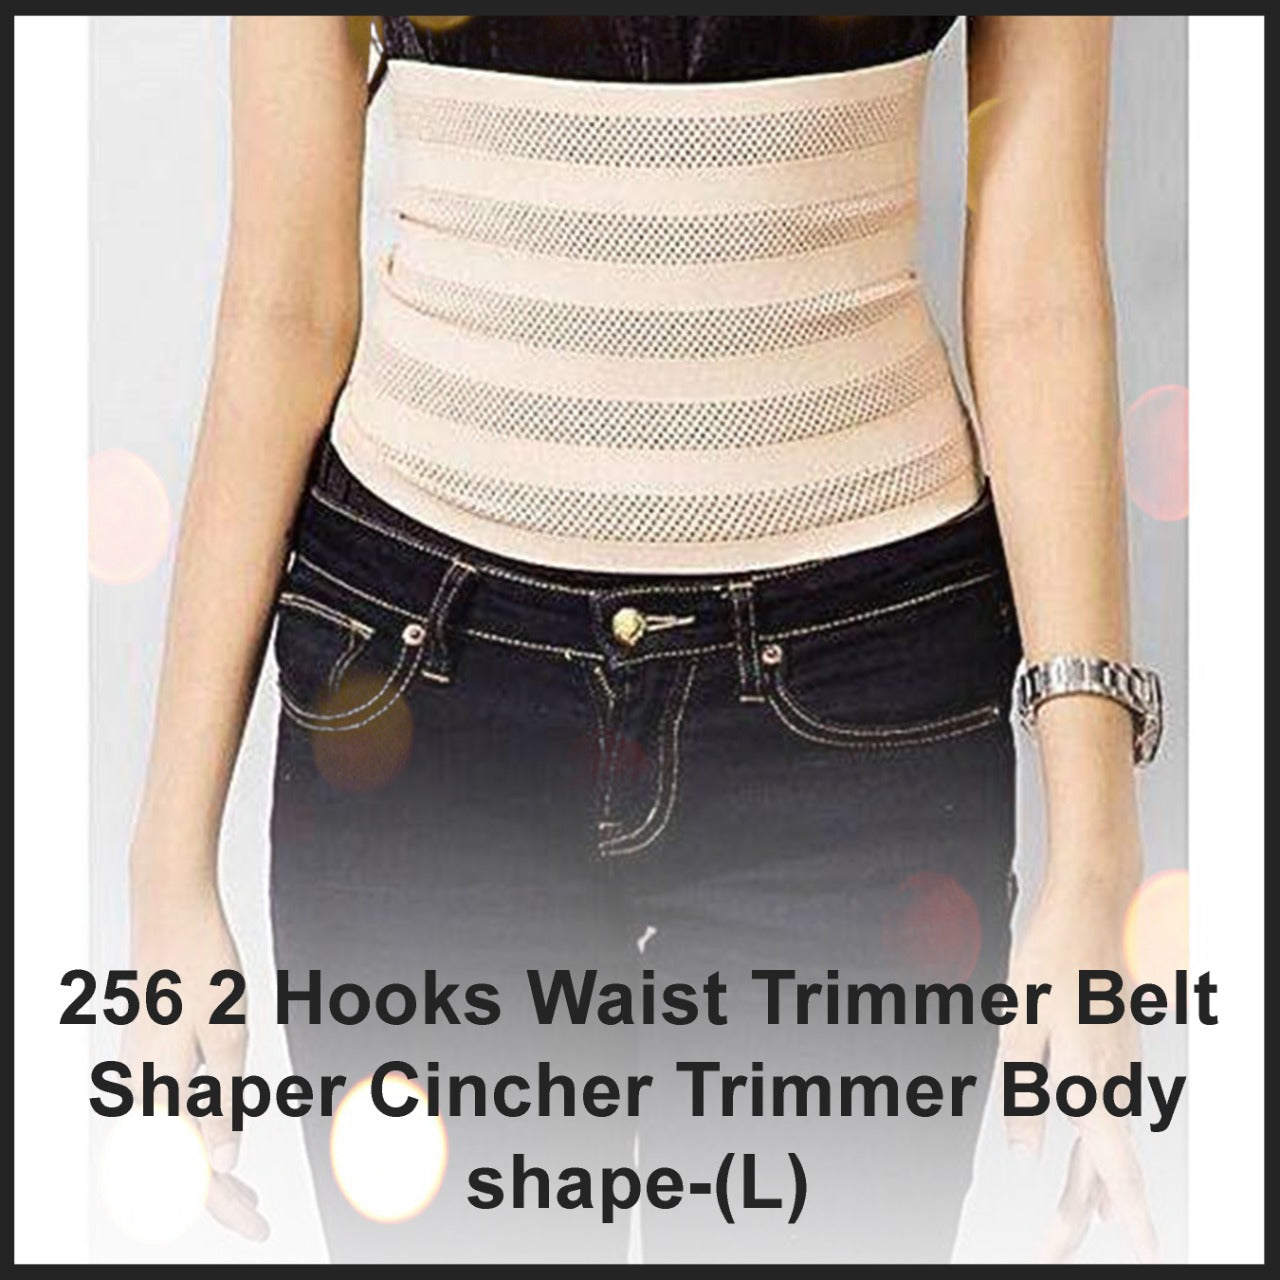 2 Hooks Waist Trimmer Belt Shaper Cincher Trimmer Body shape - (L)